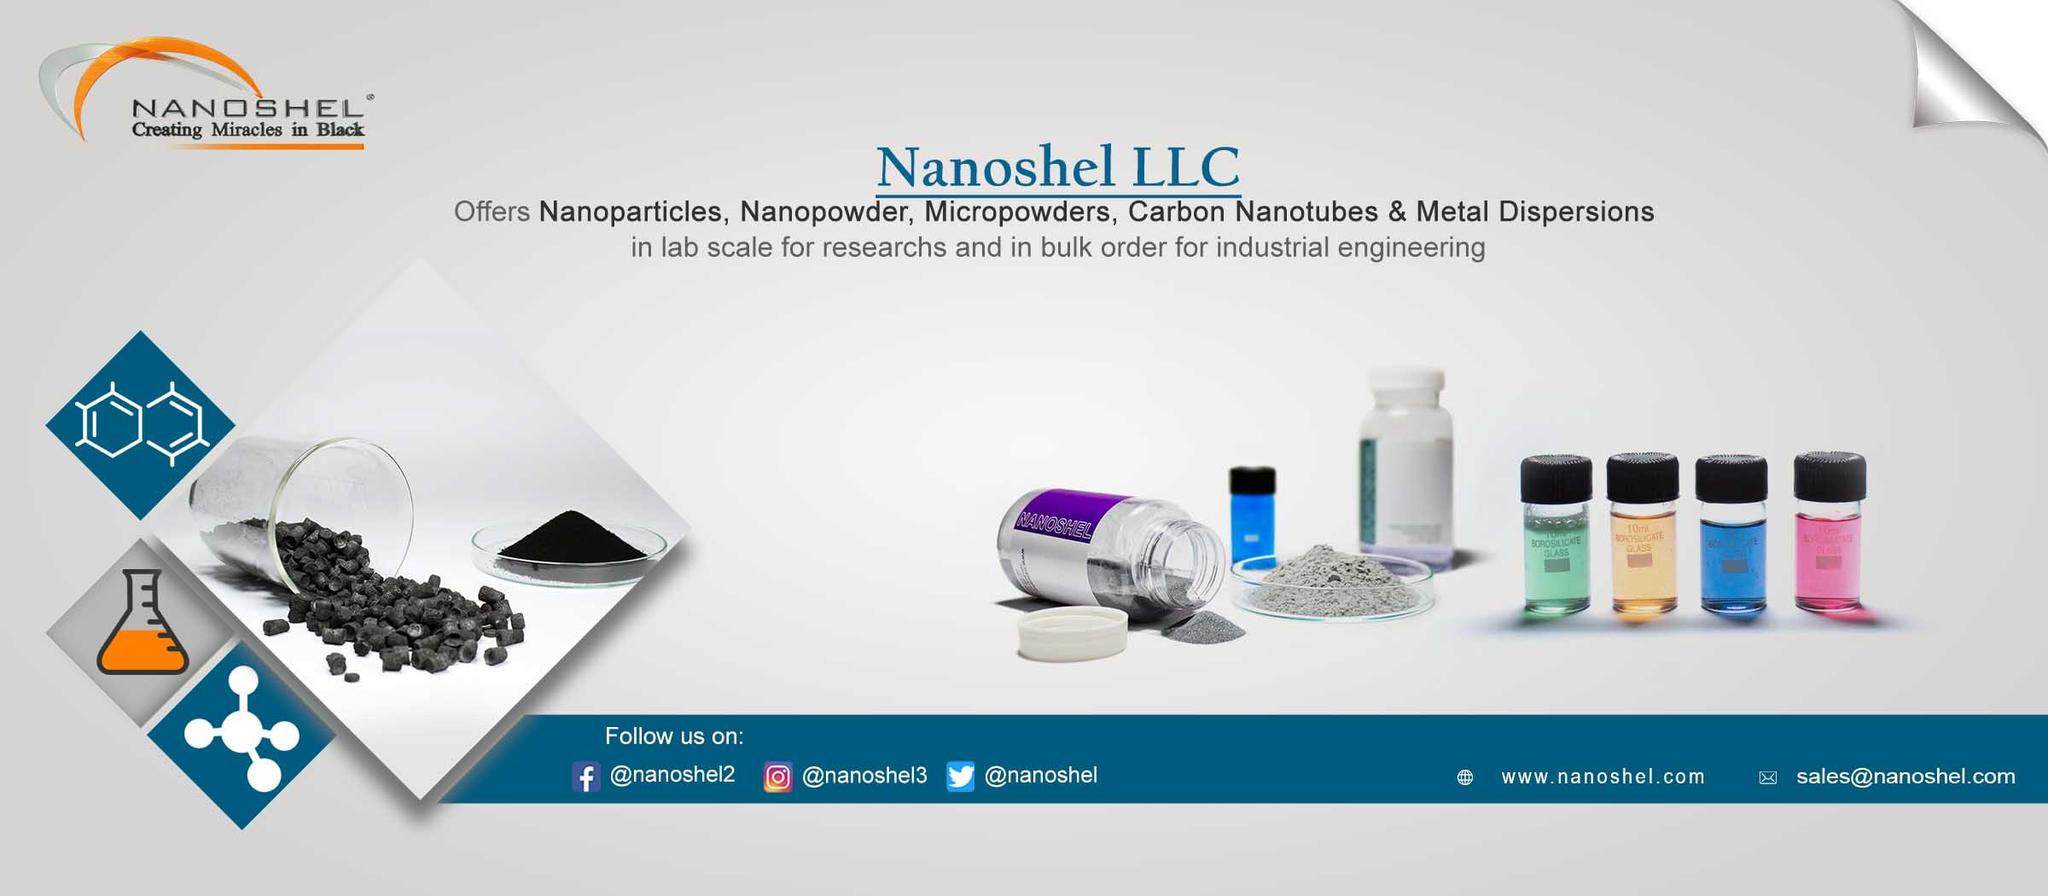 nanoshel-experts